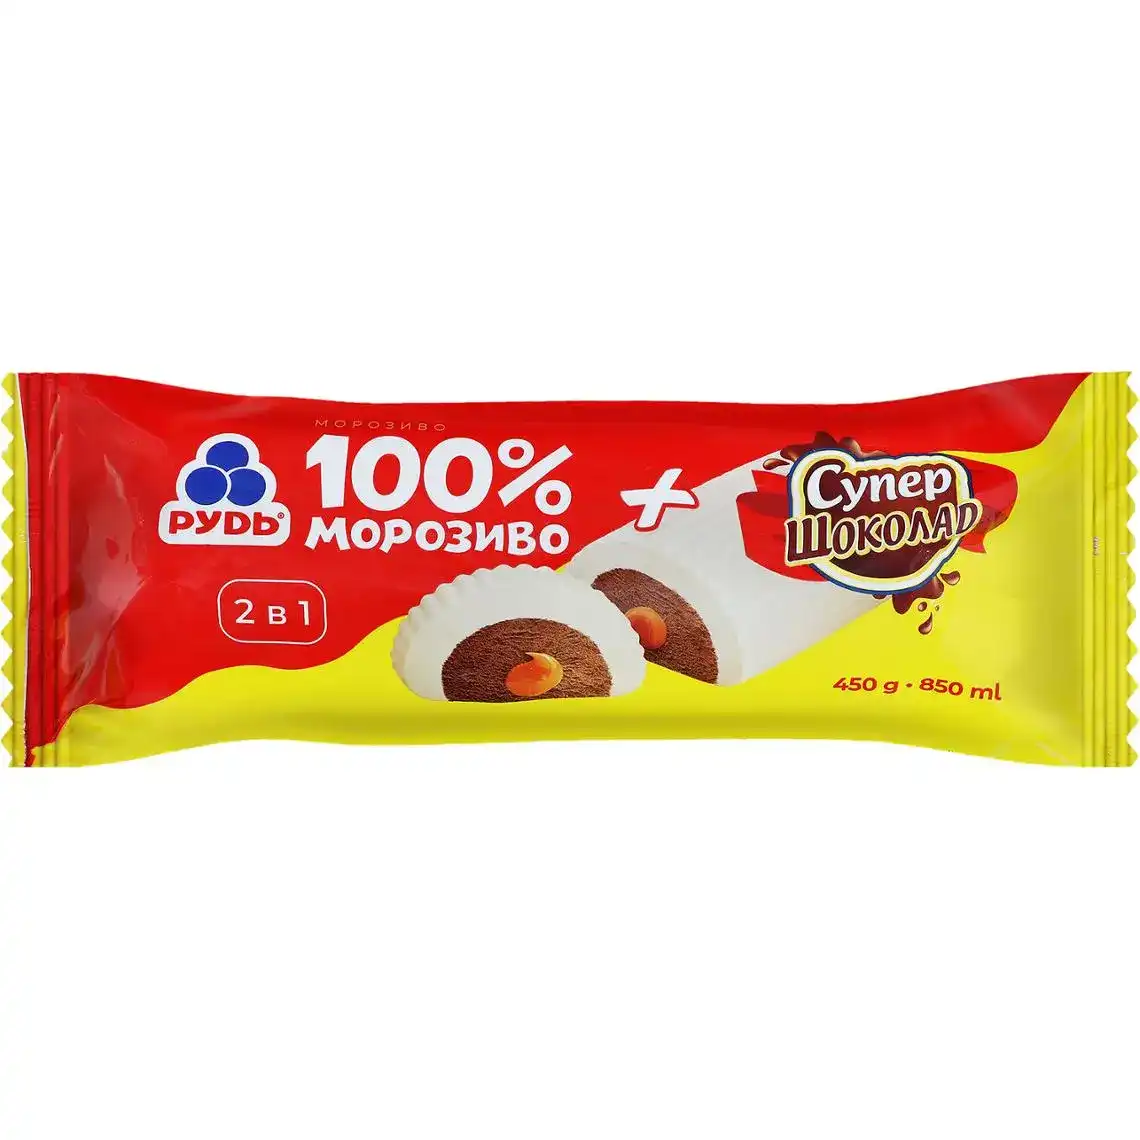 Морозиво Рудь 100% + Супер-шоколад 2 в 1 450 г